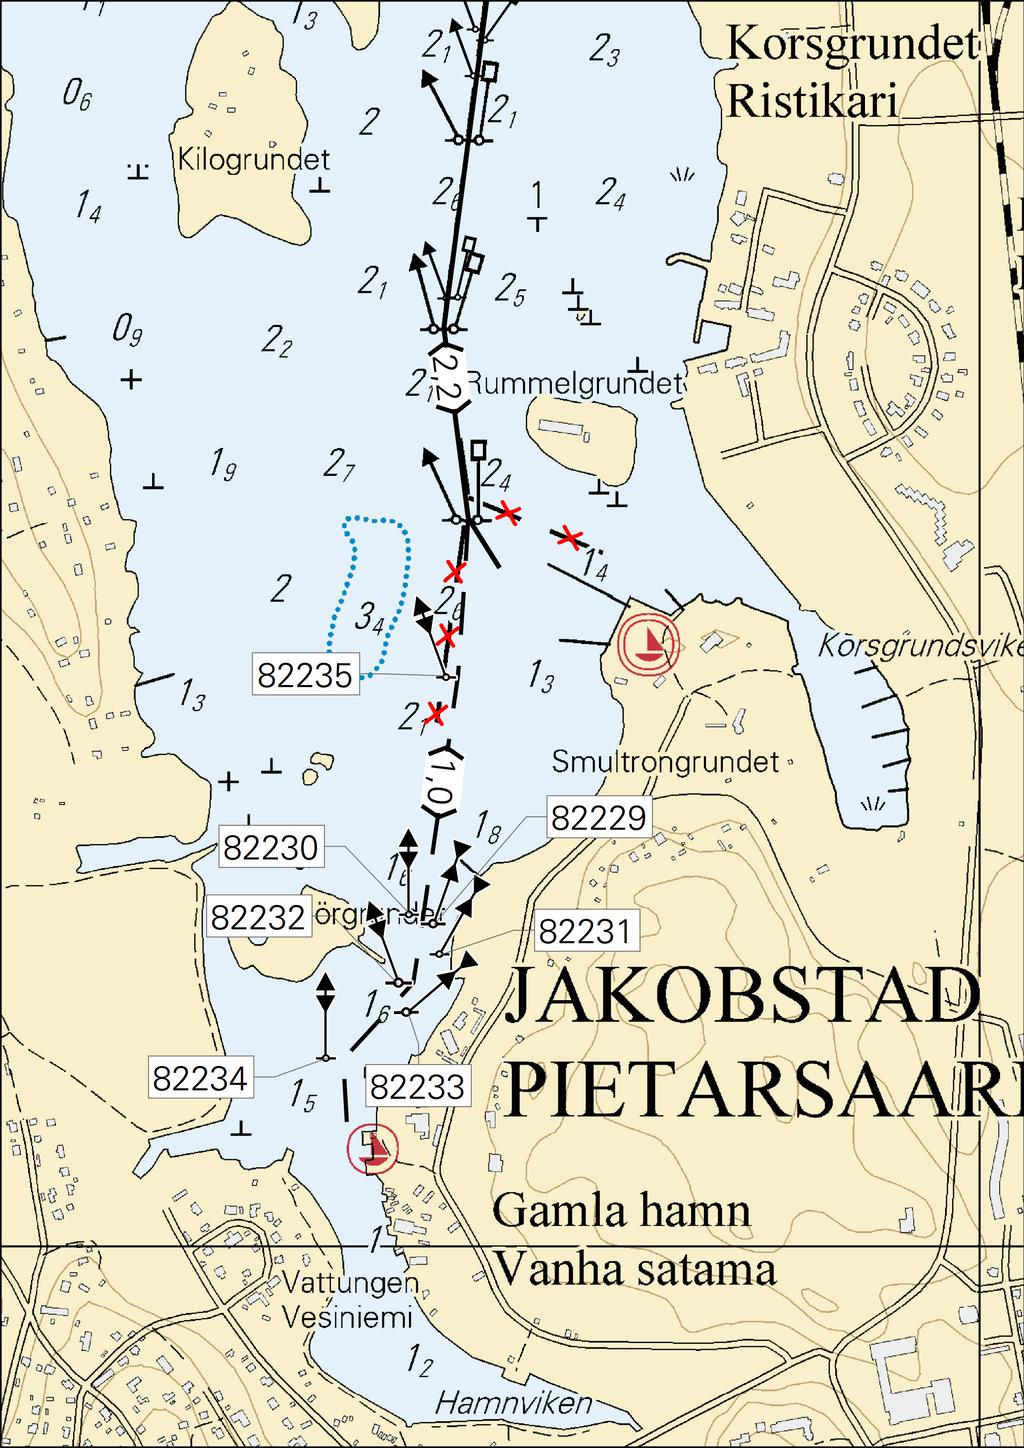 11 Venereitit merkitään vain merikarttasarjoille. Båtrutterna utmärks bara i sjökortsserierna. Small craft routes are only marked in chart folios.